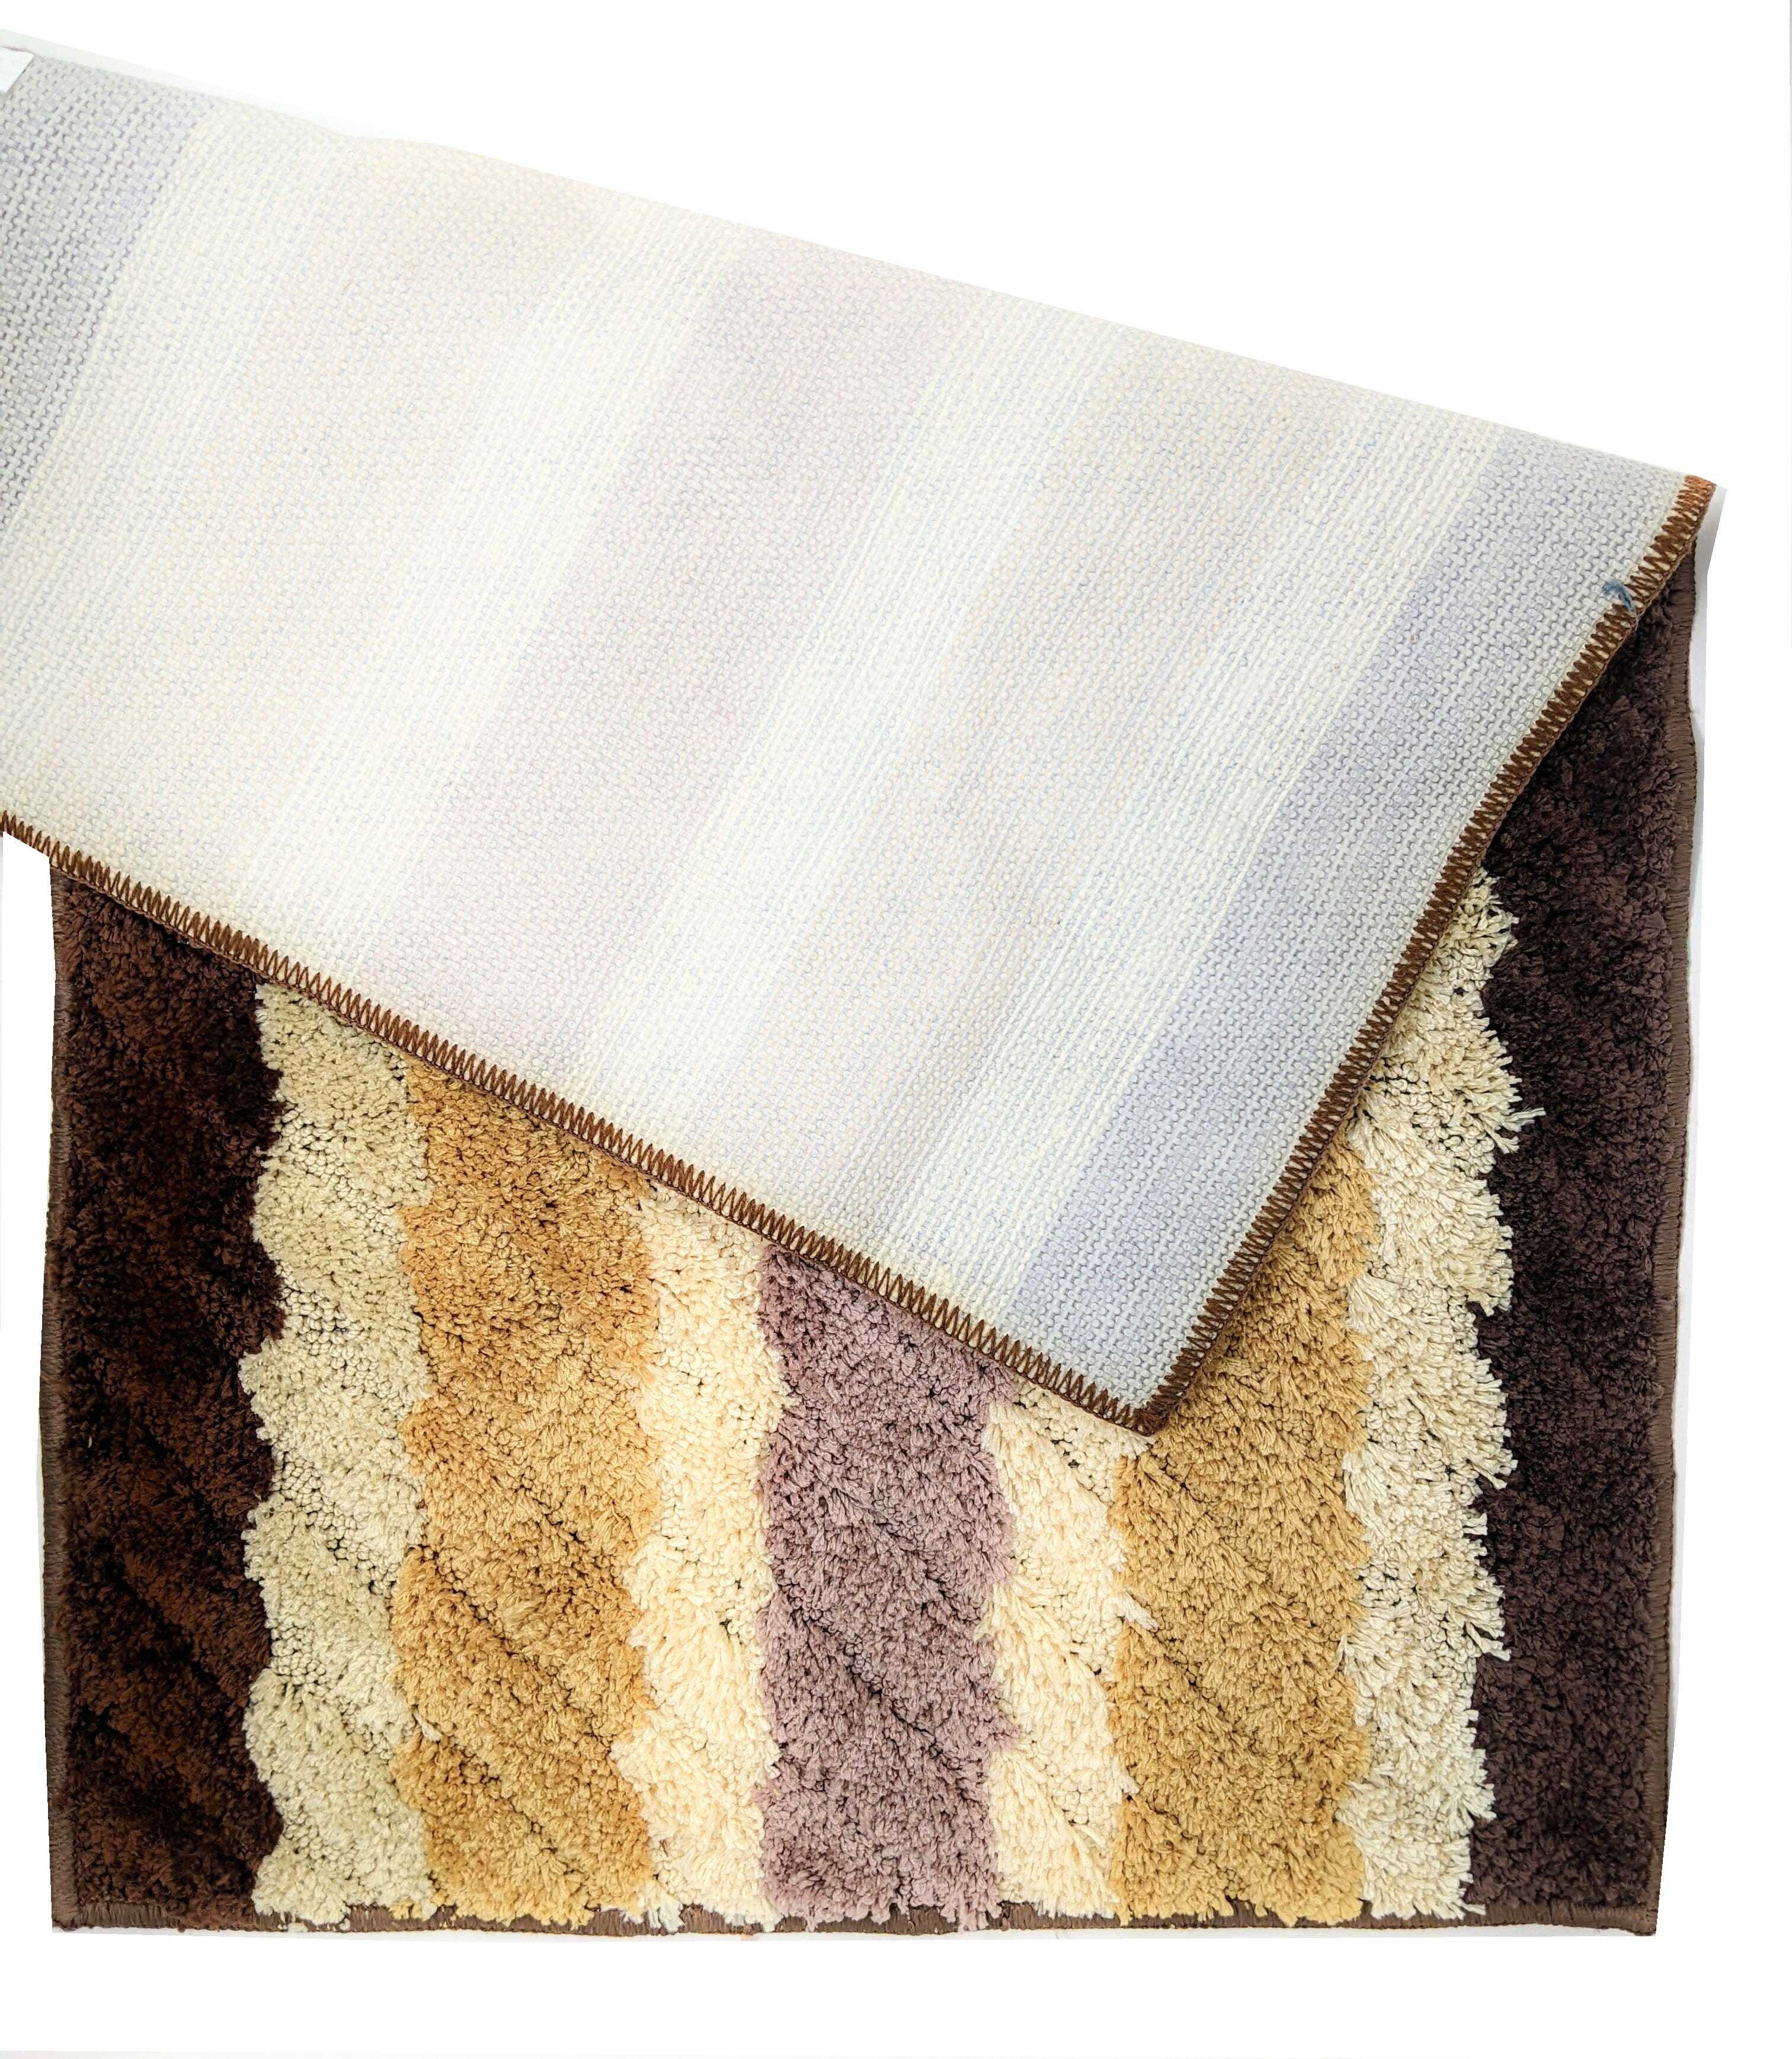 Tache 20x32 Inch Striped Brown and Beige Bathroom Rugs (TARBS2032) - Tache Home Fashion